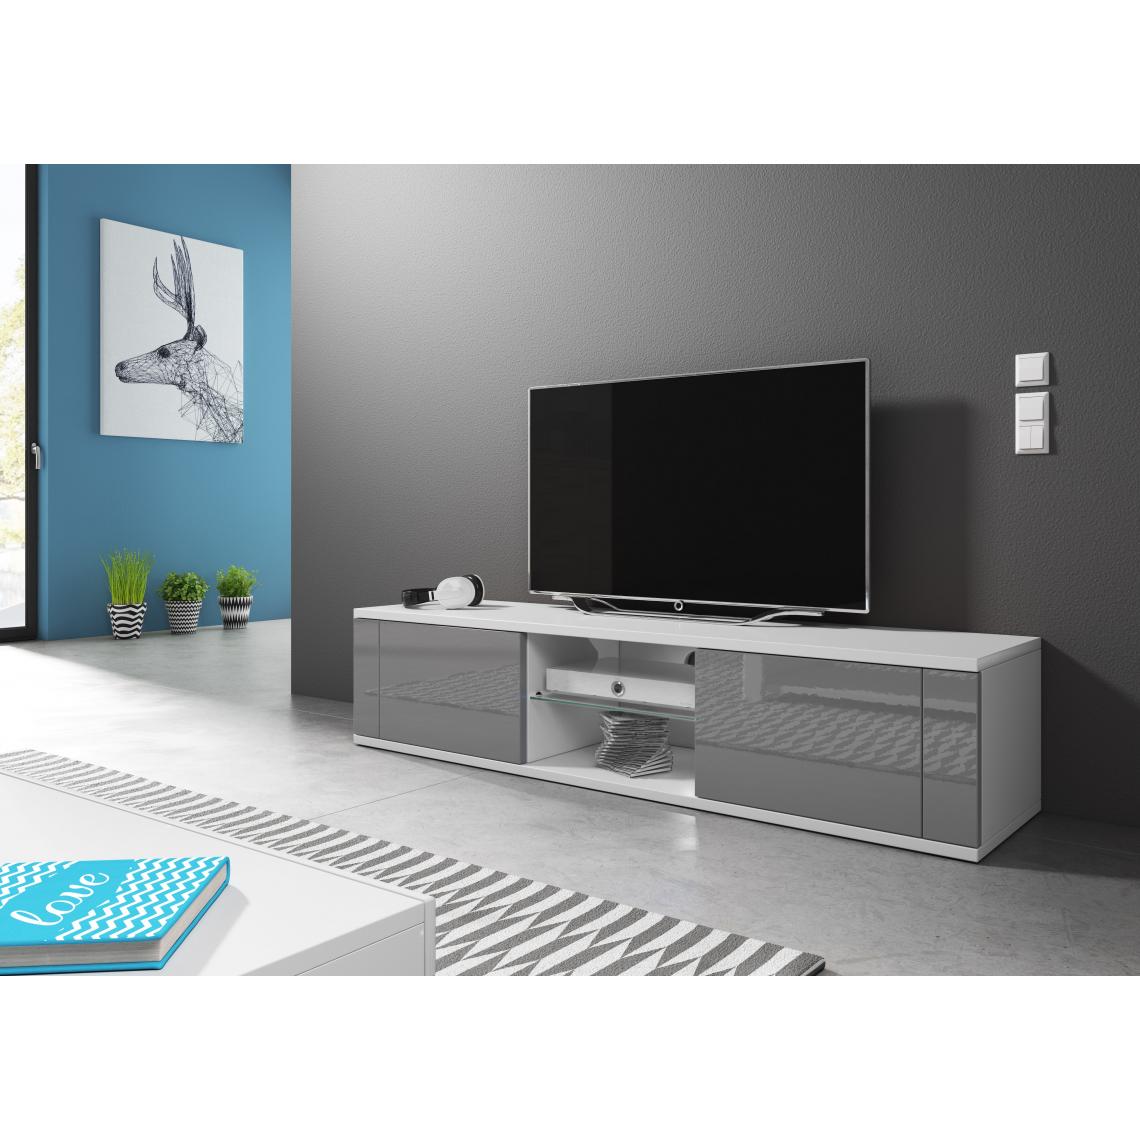 Vivaldi - VIVALDI Meuble TV - HIT - 140 cm - blanc mat / gris brillant avec LED - style design - Meubles TV, Hi-Fi